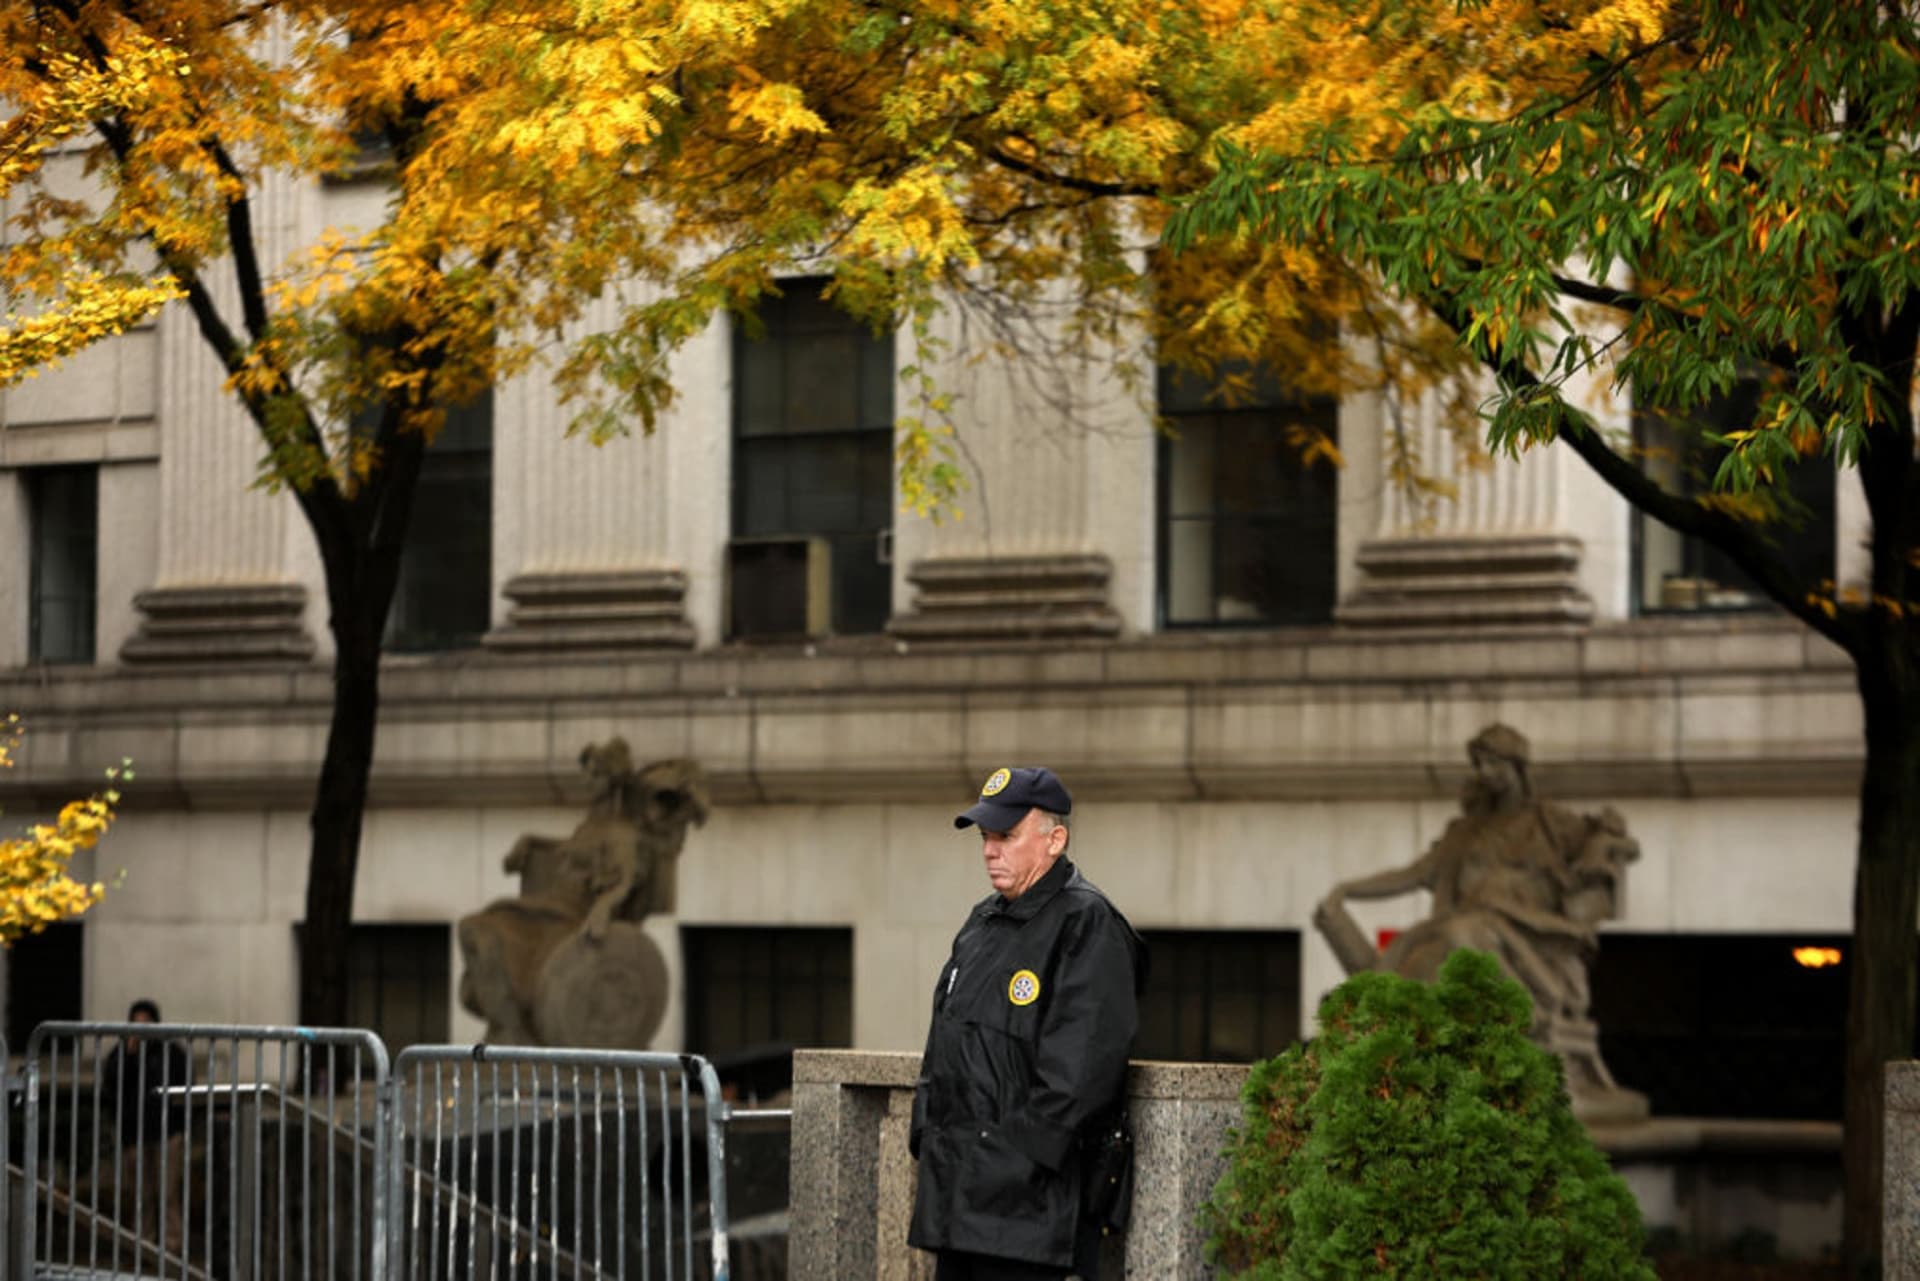 التخطيط لـ"هجمات داعش" في نيويورك يسجن "البهنساوي" 40 سنة